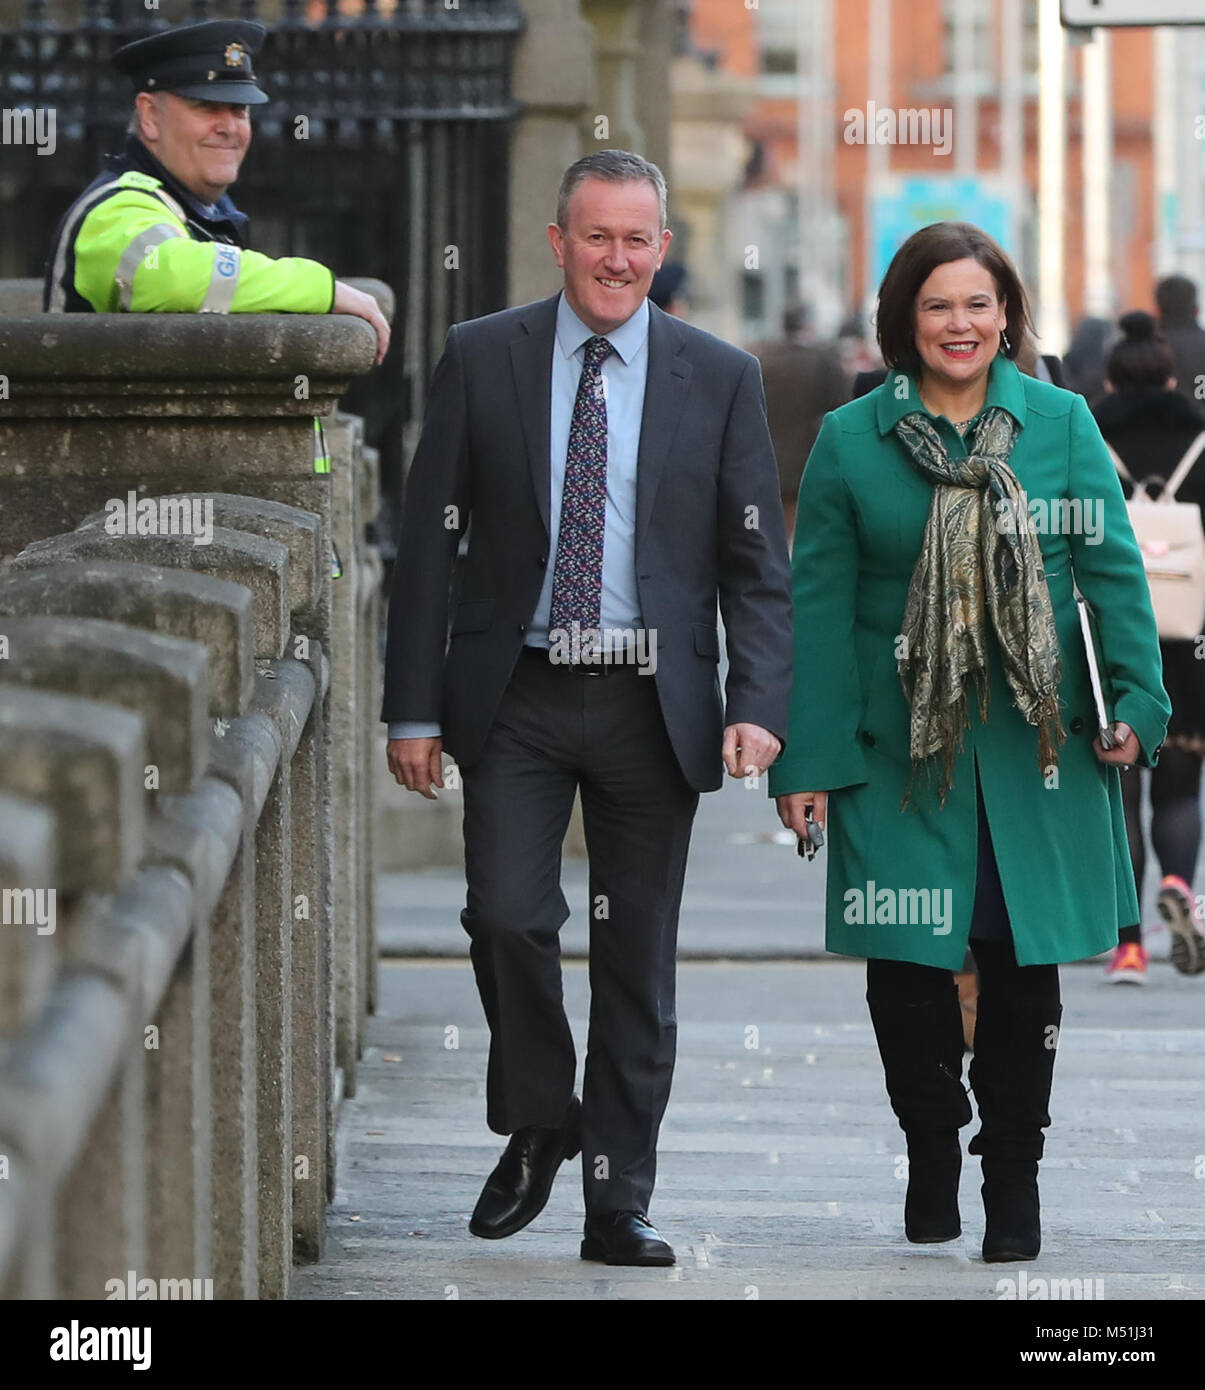 Un Garda ressemble à du Sinn Fein Conor Murphy et Mary Lou McDonald,  lorsqu'ils arrivent à des édifices gouvernementaux à Dublin pour une  réunion avec le Premier ministre irlandais Leo Varadkar Photo